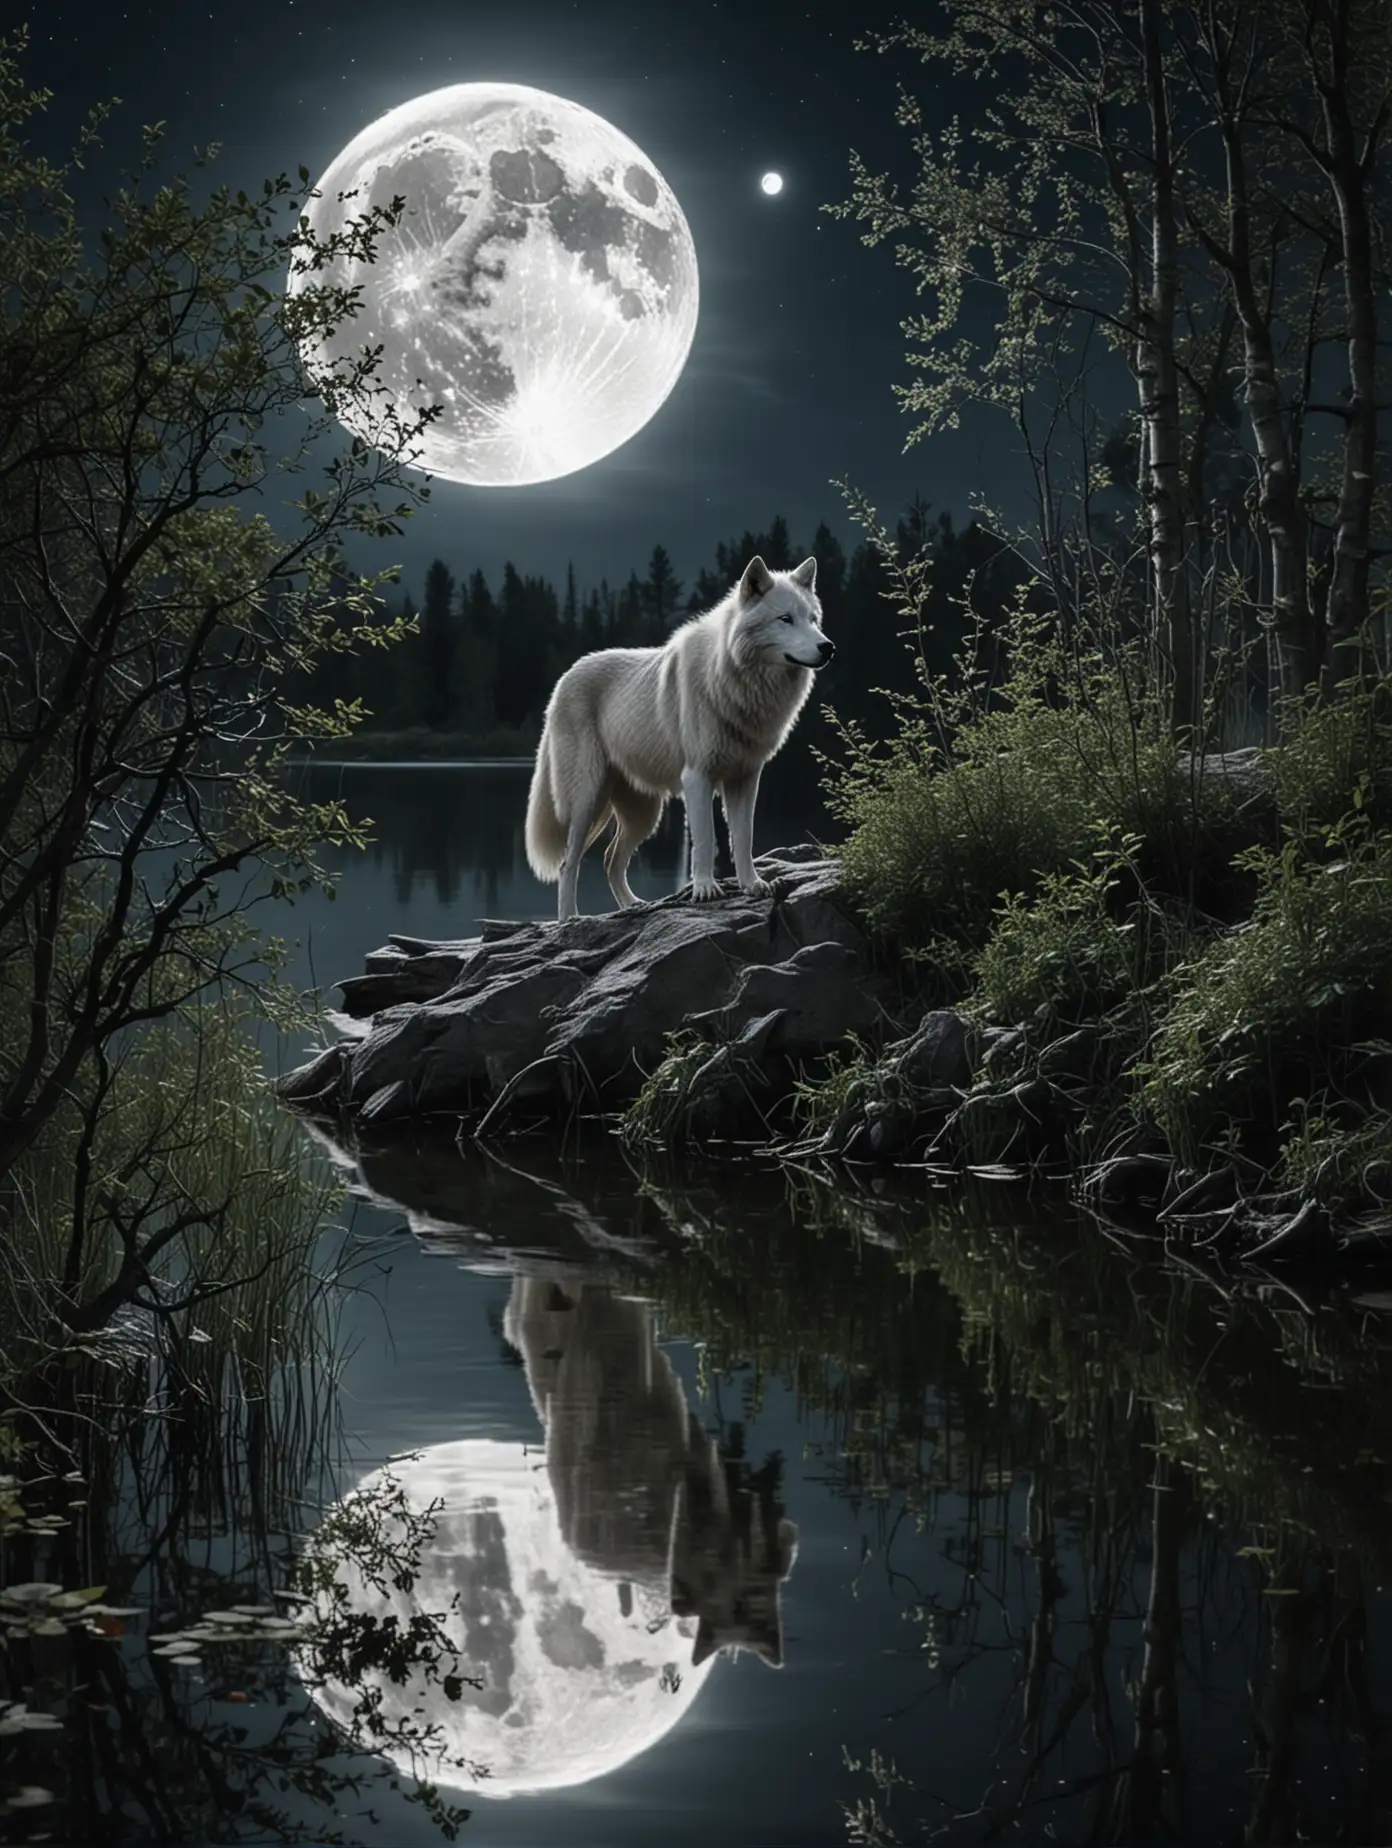 Огромная луна смотрит в озеро и видит там свое отражение,в кустах белый волк воет на луну